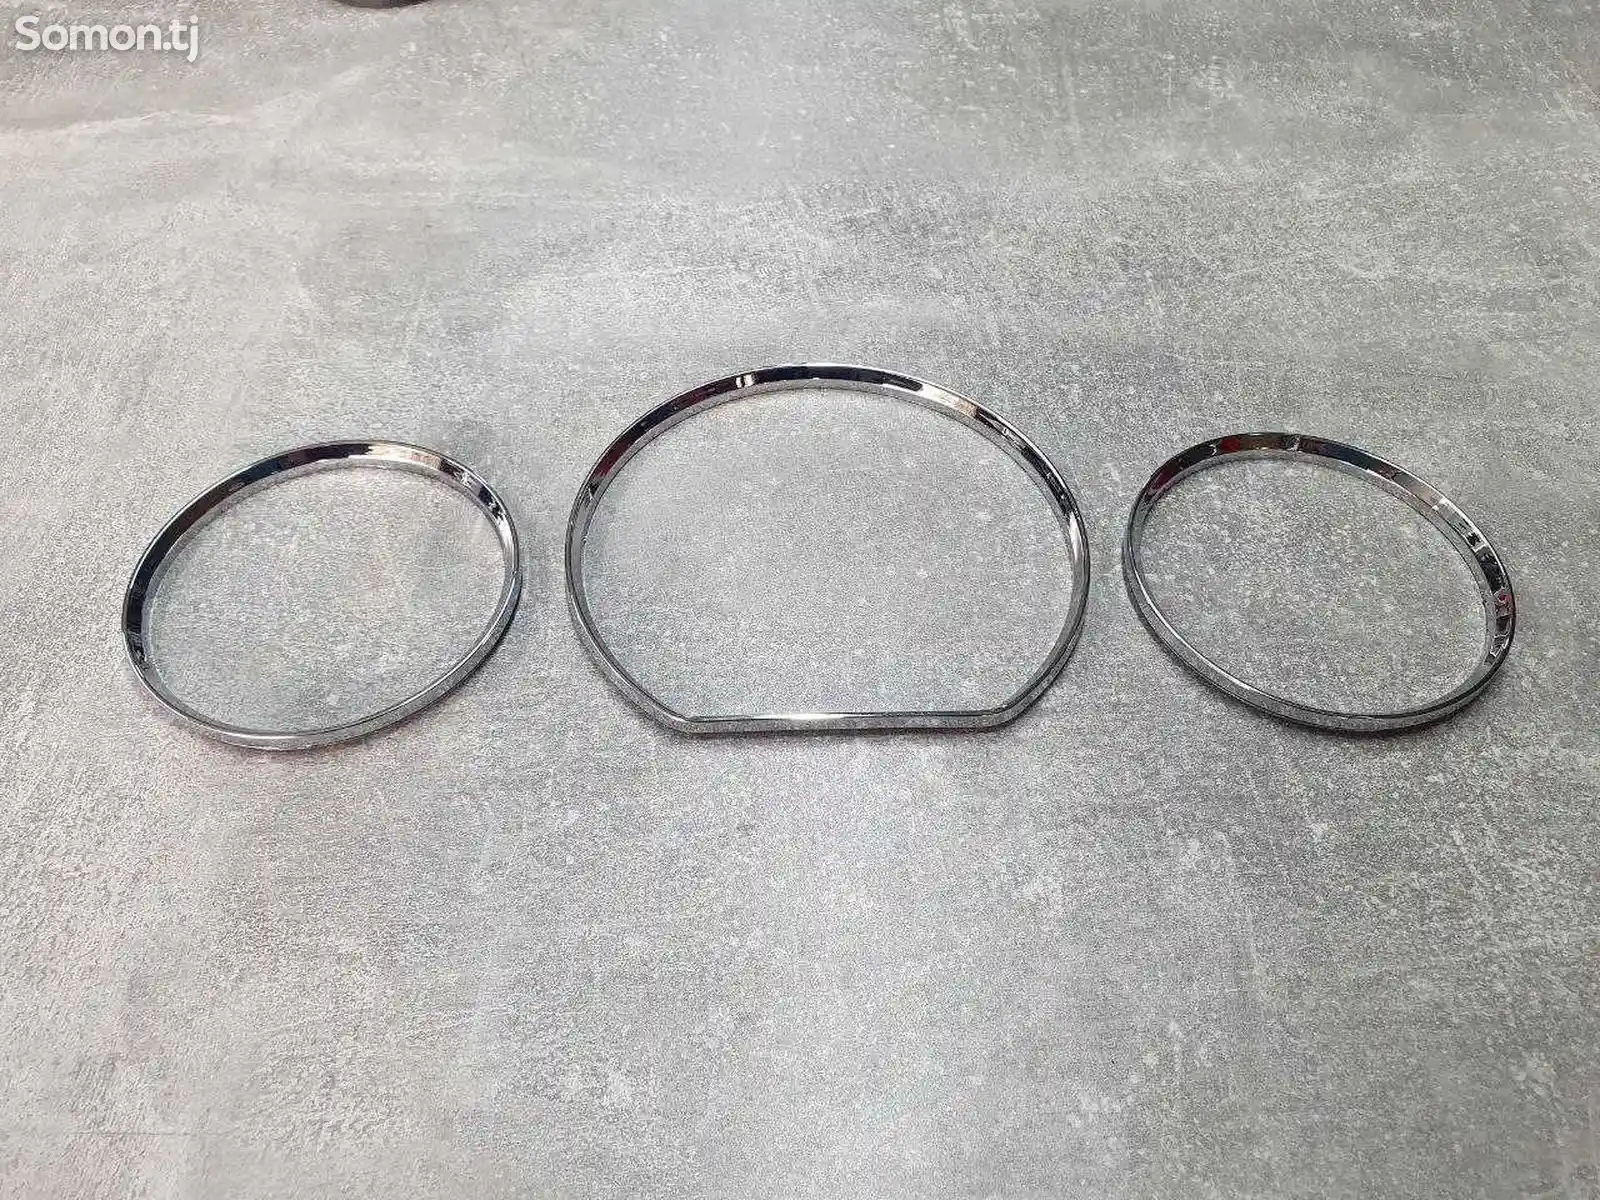 Хромированные кольца для панель приборов w202 сечка w210 очки-4